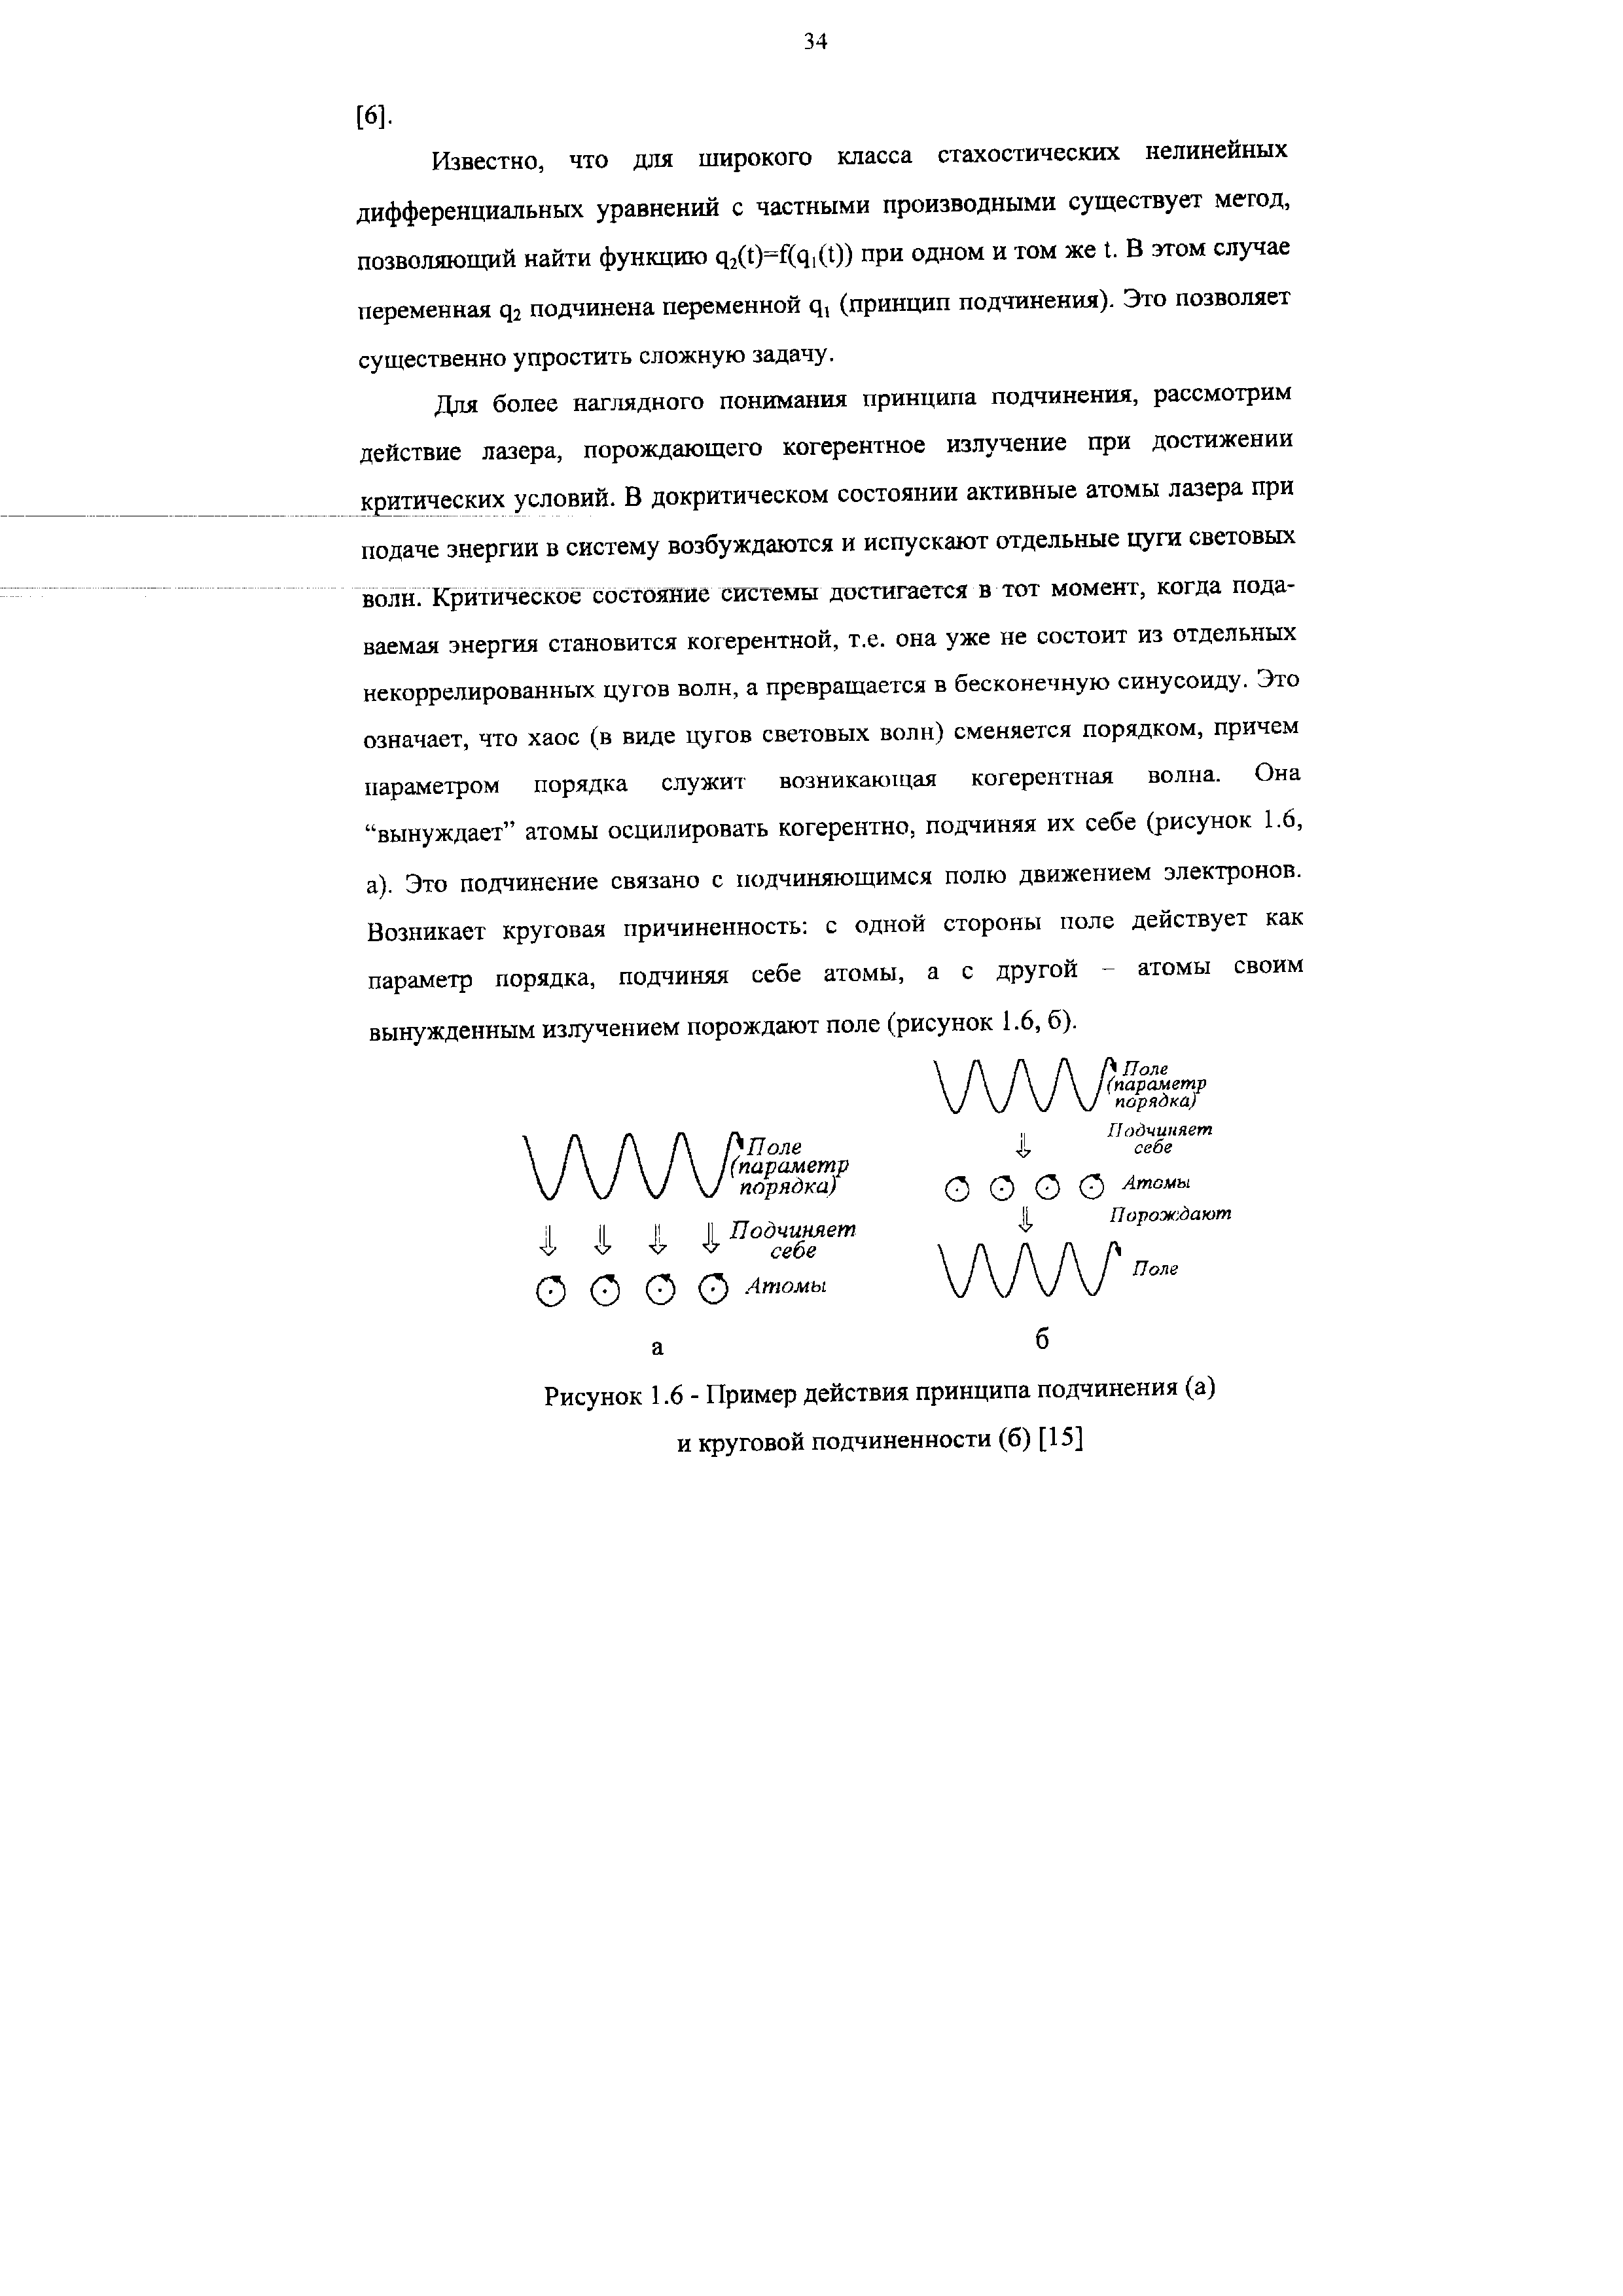 Рисунок 1.6 - Пример действия принципа подчинения (а) и круговой подчиненности (б) [15]
